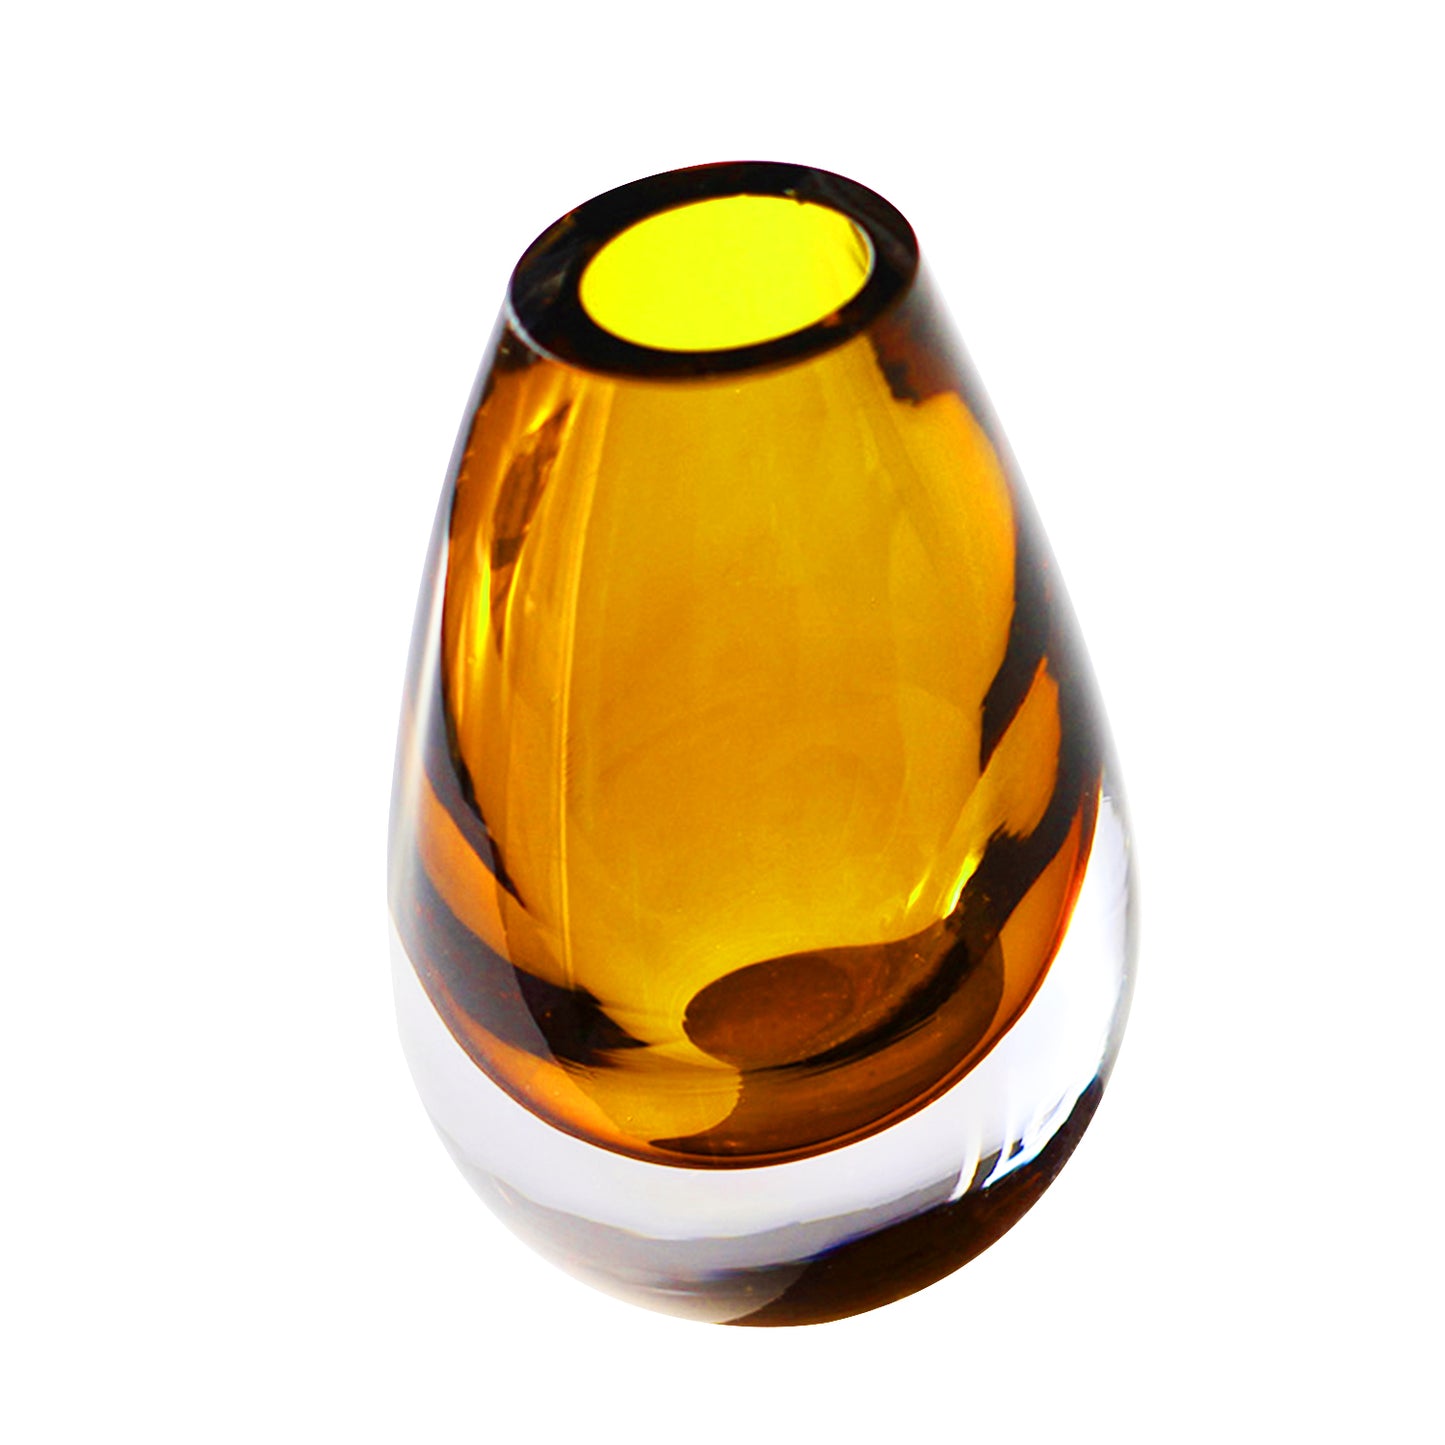 Tropfenförmige bernsteingelbe Vase – mundgeblasenes dickes Glas – umweltfreundliche Eleganz